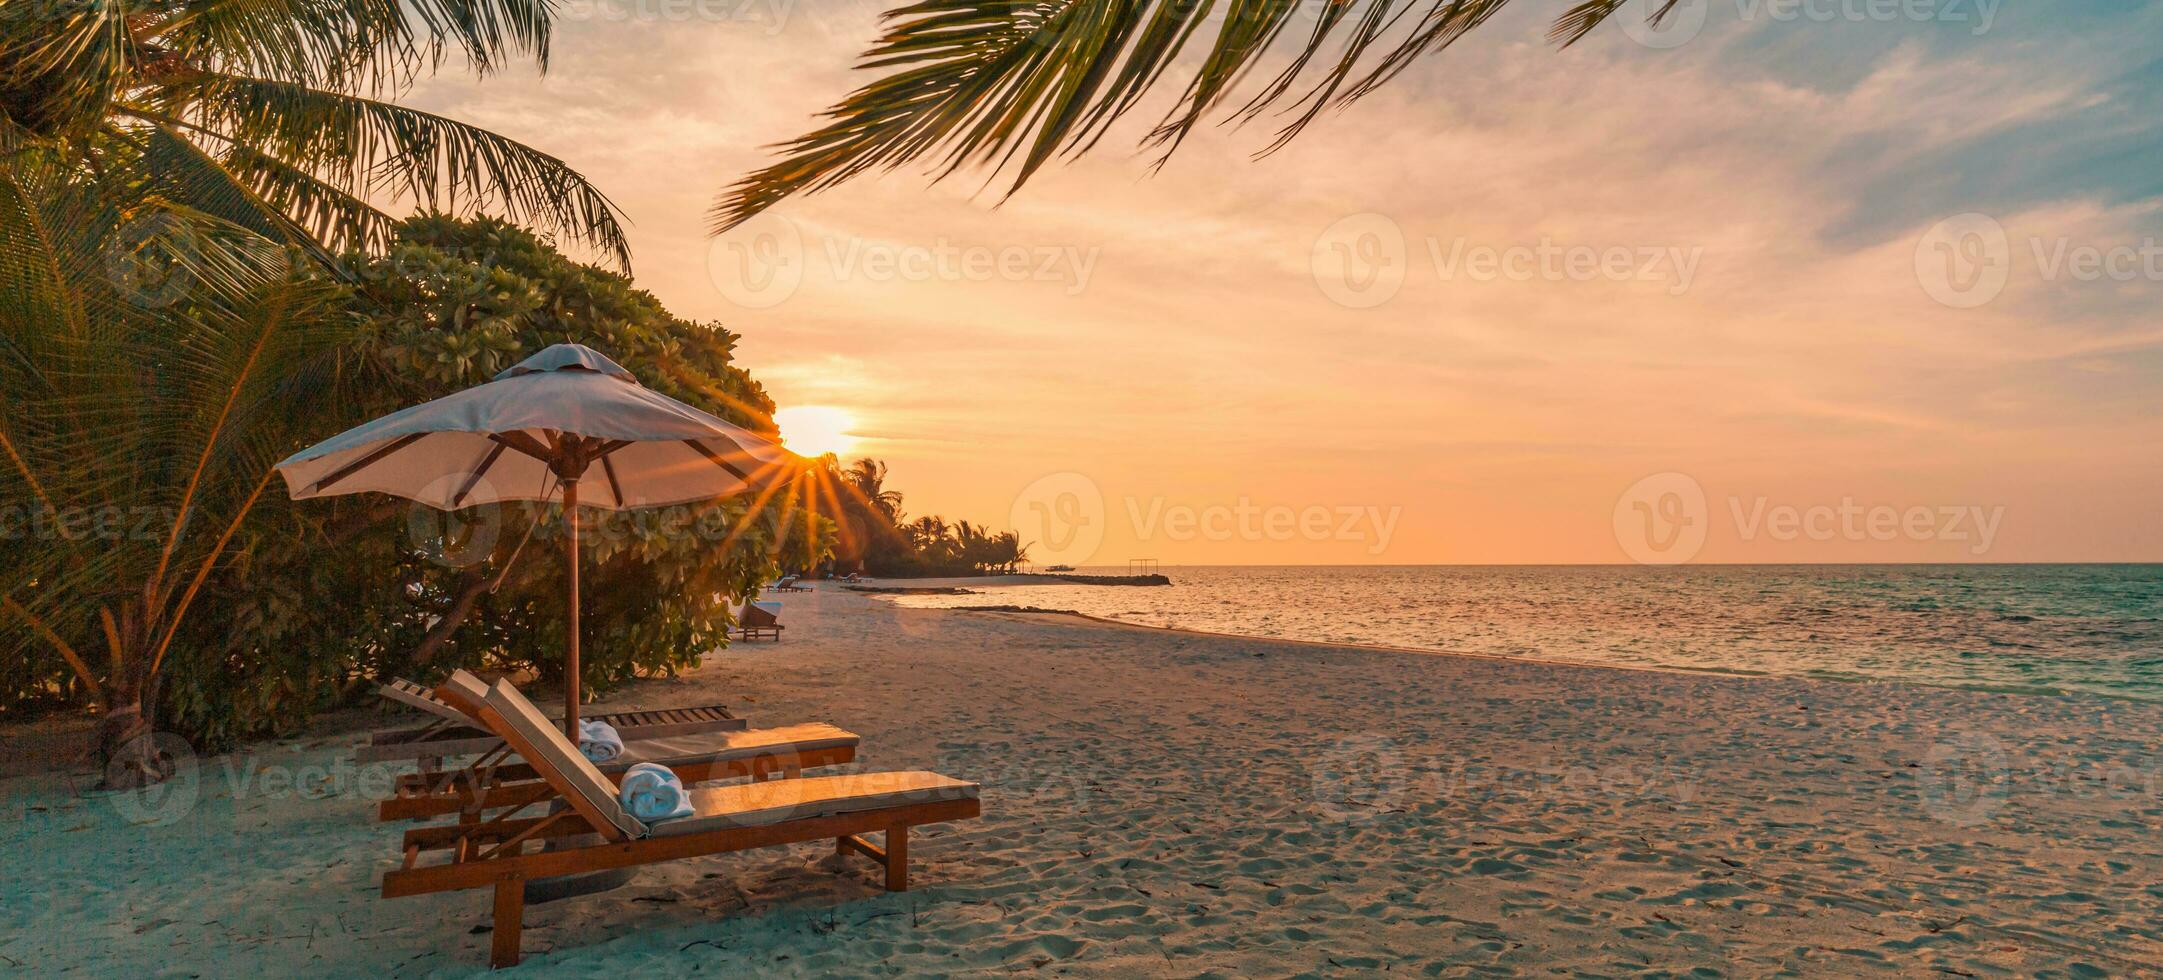 Fantastisk solnedgång strand. romantisk par stolar paraply. lugn samhörighet kärlek välbefinnande, koppla av skön landskap design. flykt tropisk ö kust handflatan löv idyllisk hav foto